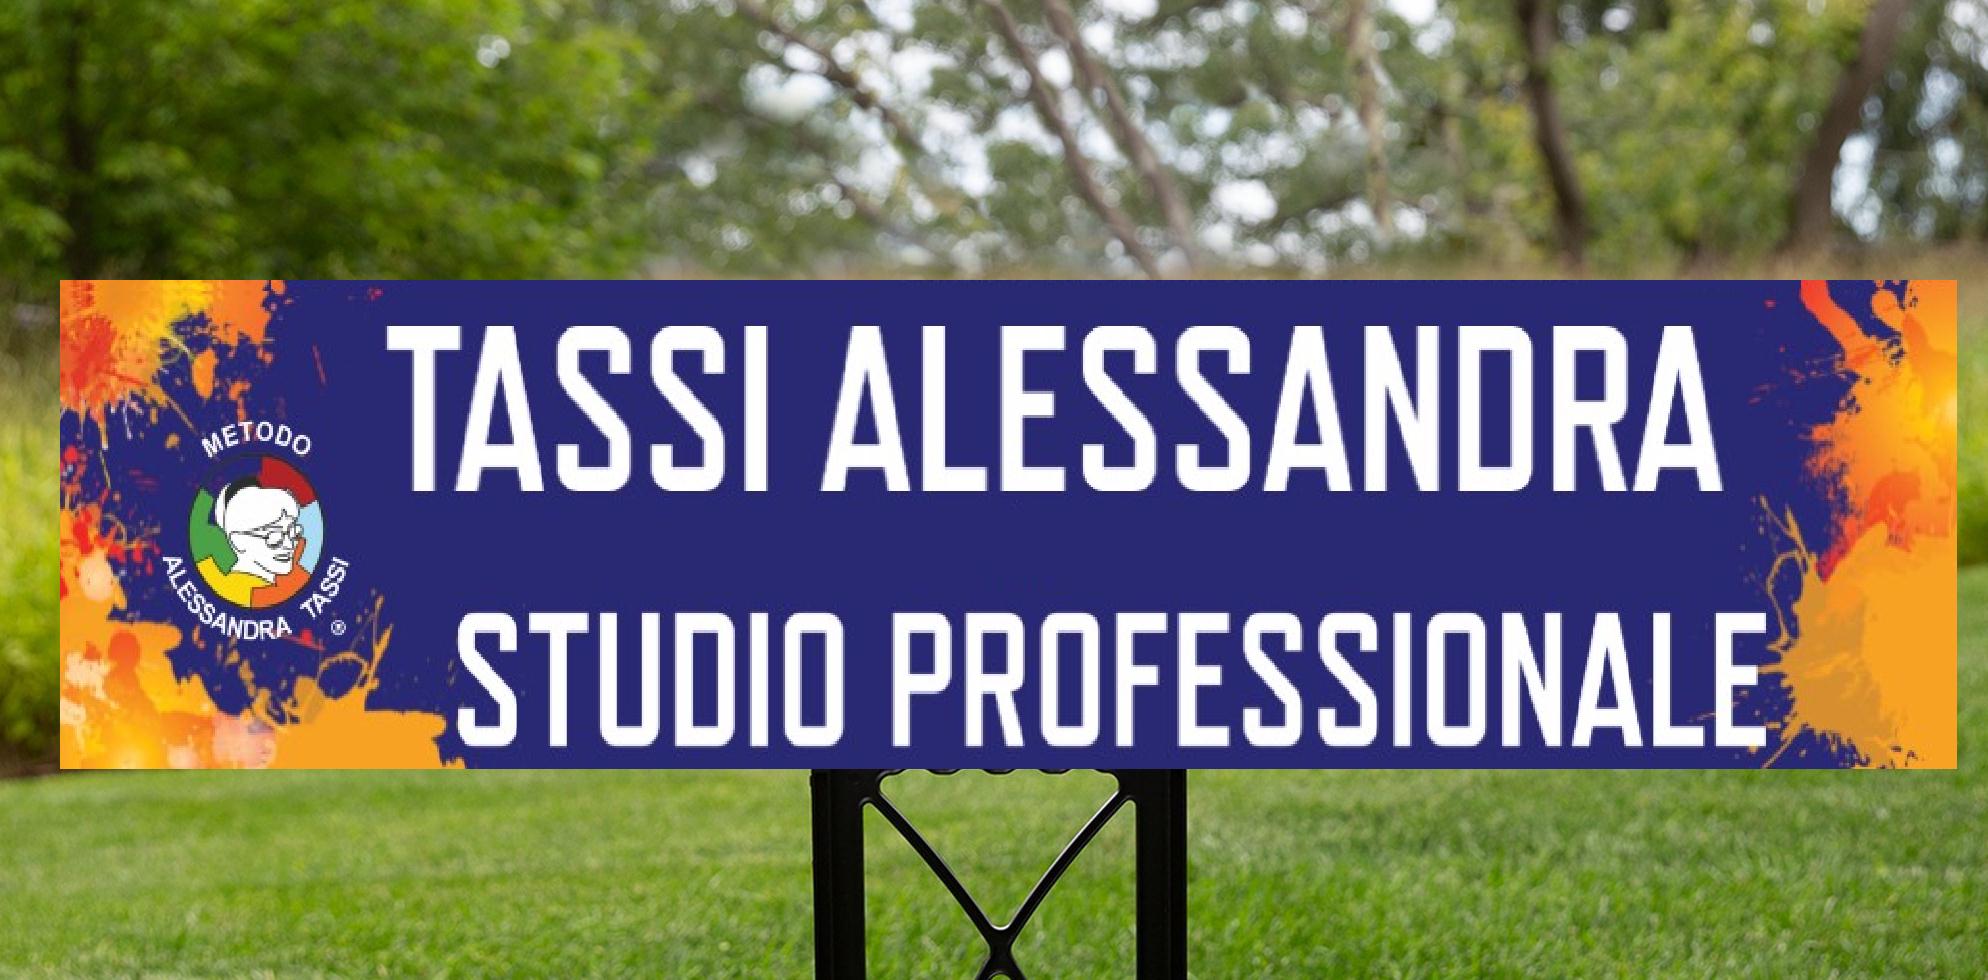 STUDIO PROFESSIONALE METODO ALESSANDRA TASSI